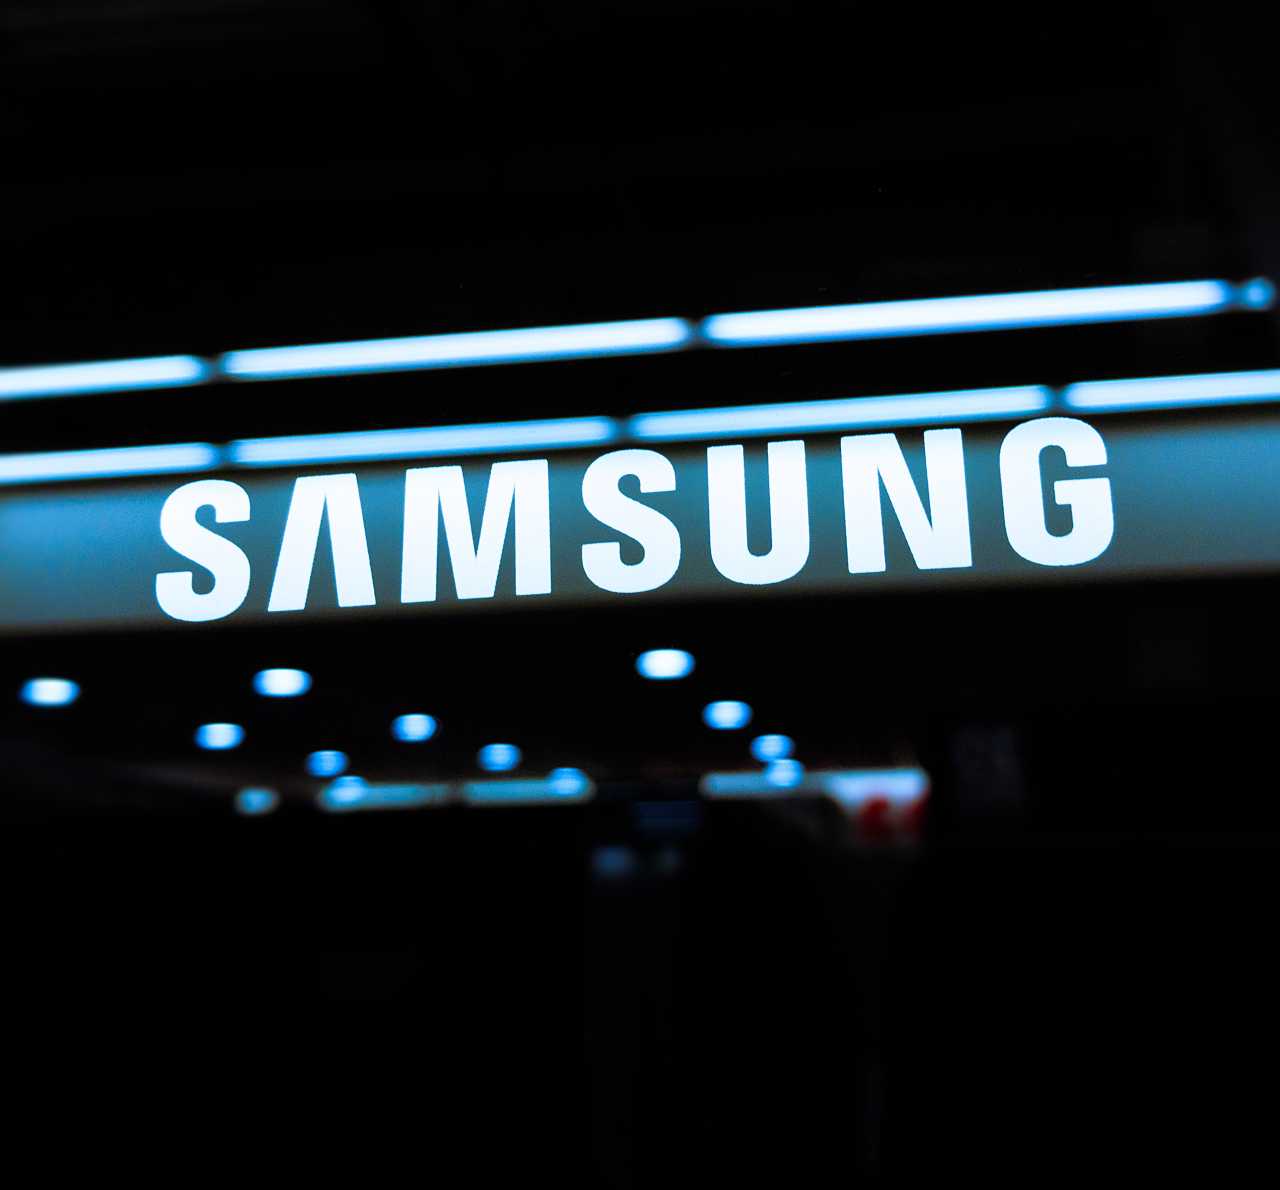 Samsung 20220118 tech